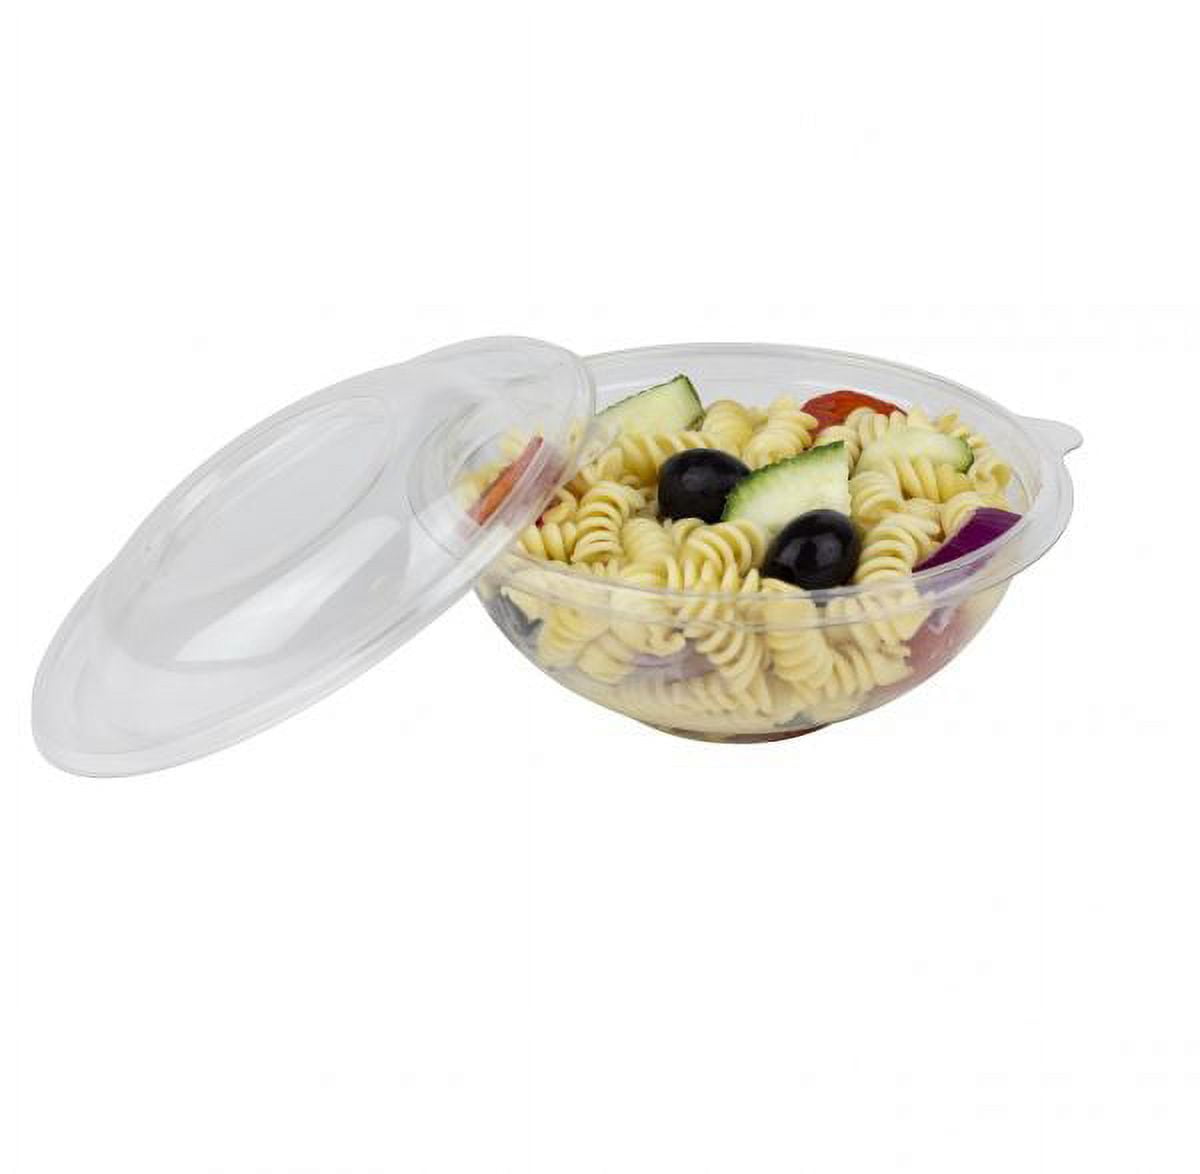 Karat 16 oz PET Plastic Tamper Resistant Hinged Salad Bowl with Dome Lid -  240 sets